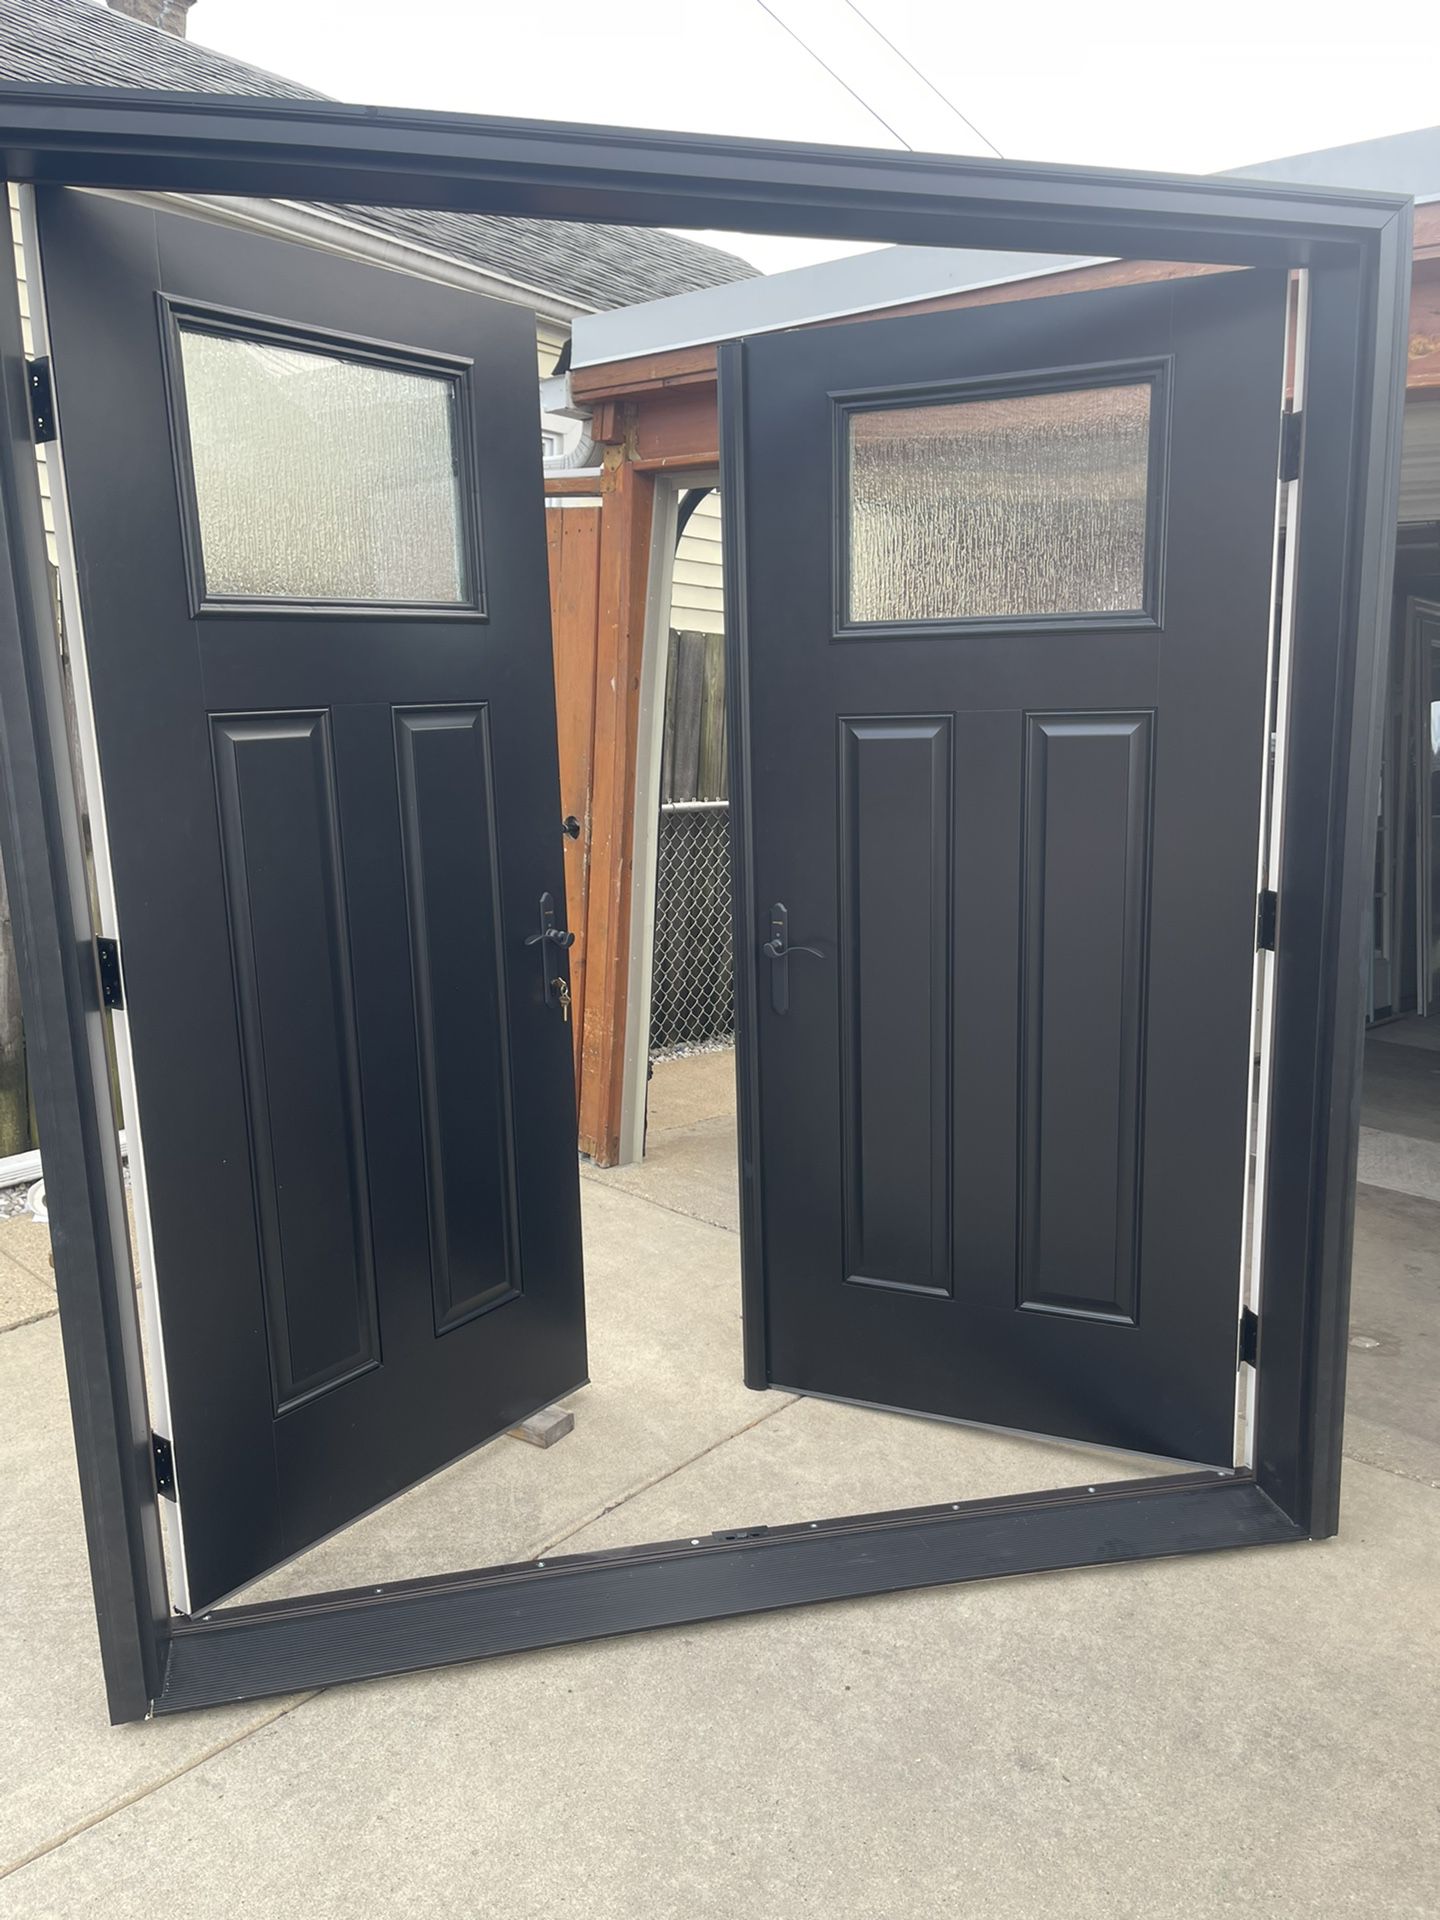 New Double Doors Fiberglass Size W74.1/4 H81.3/4 $2650 Left Hand Inswing Open First Or Patio Door New Jam Size Is 6.1/2 Inch 